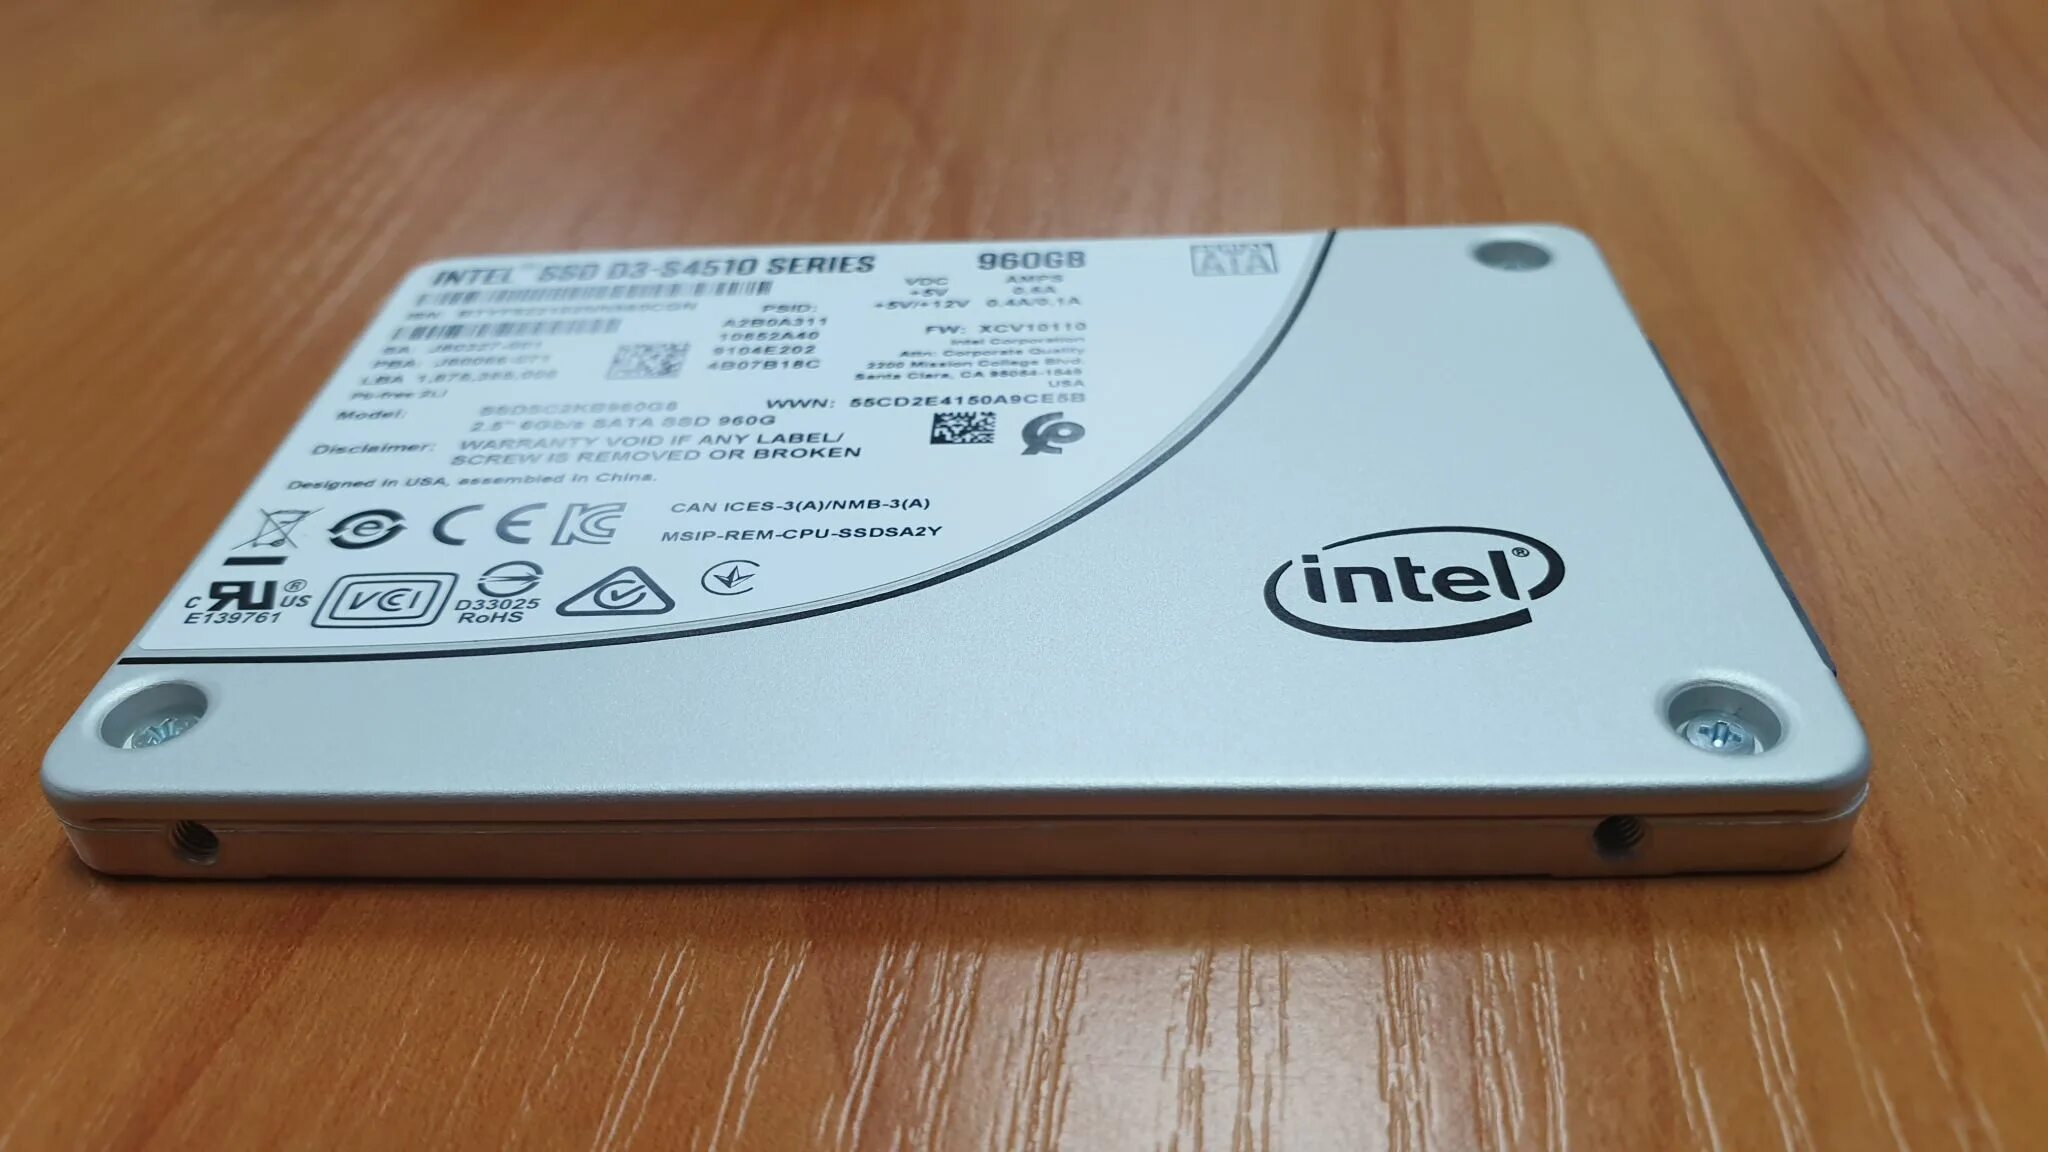 SSD Intel 960gb. SSD Intel 4510. SSD Intel s4500 960gb. SSD Intel 500gb. Ssd intel d3 s4510